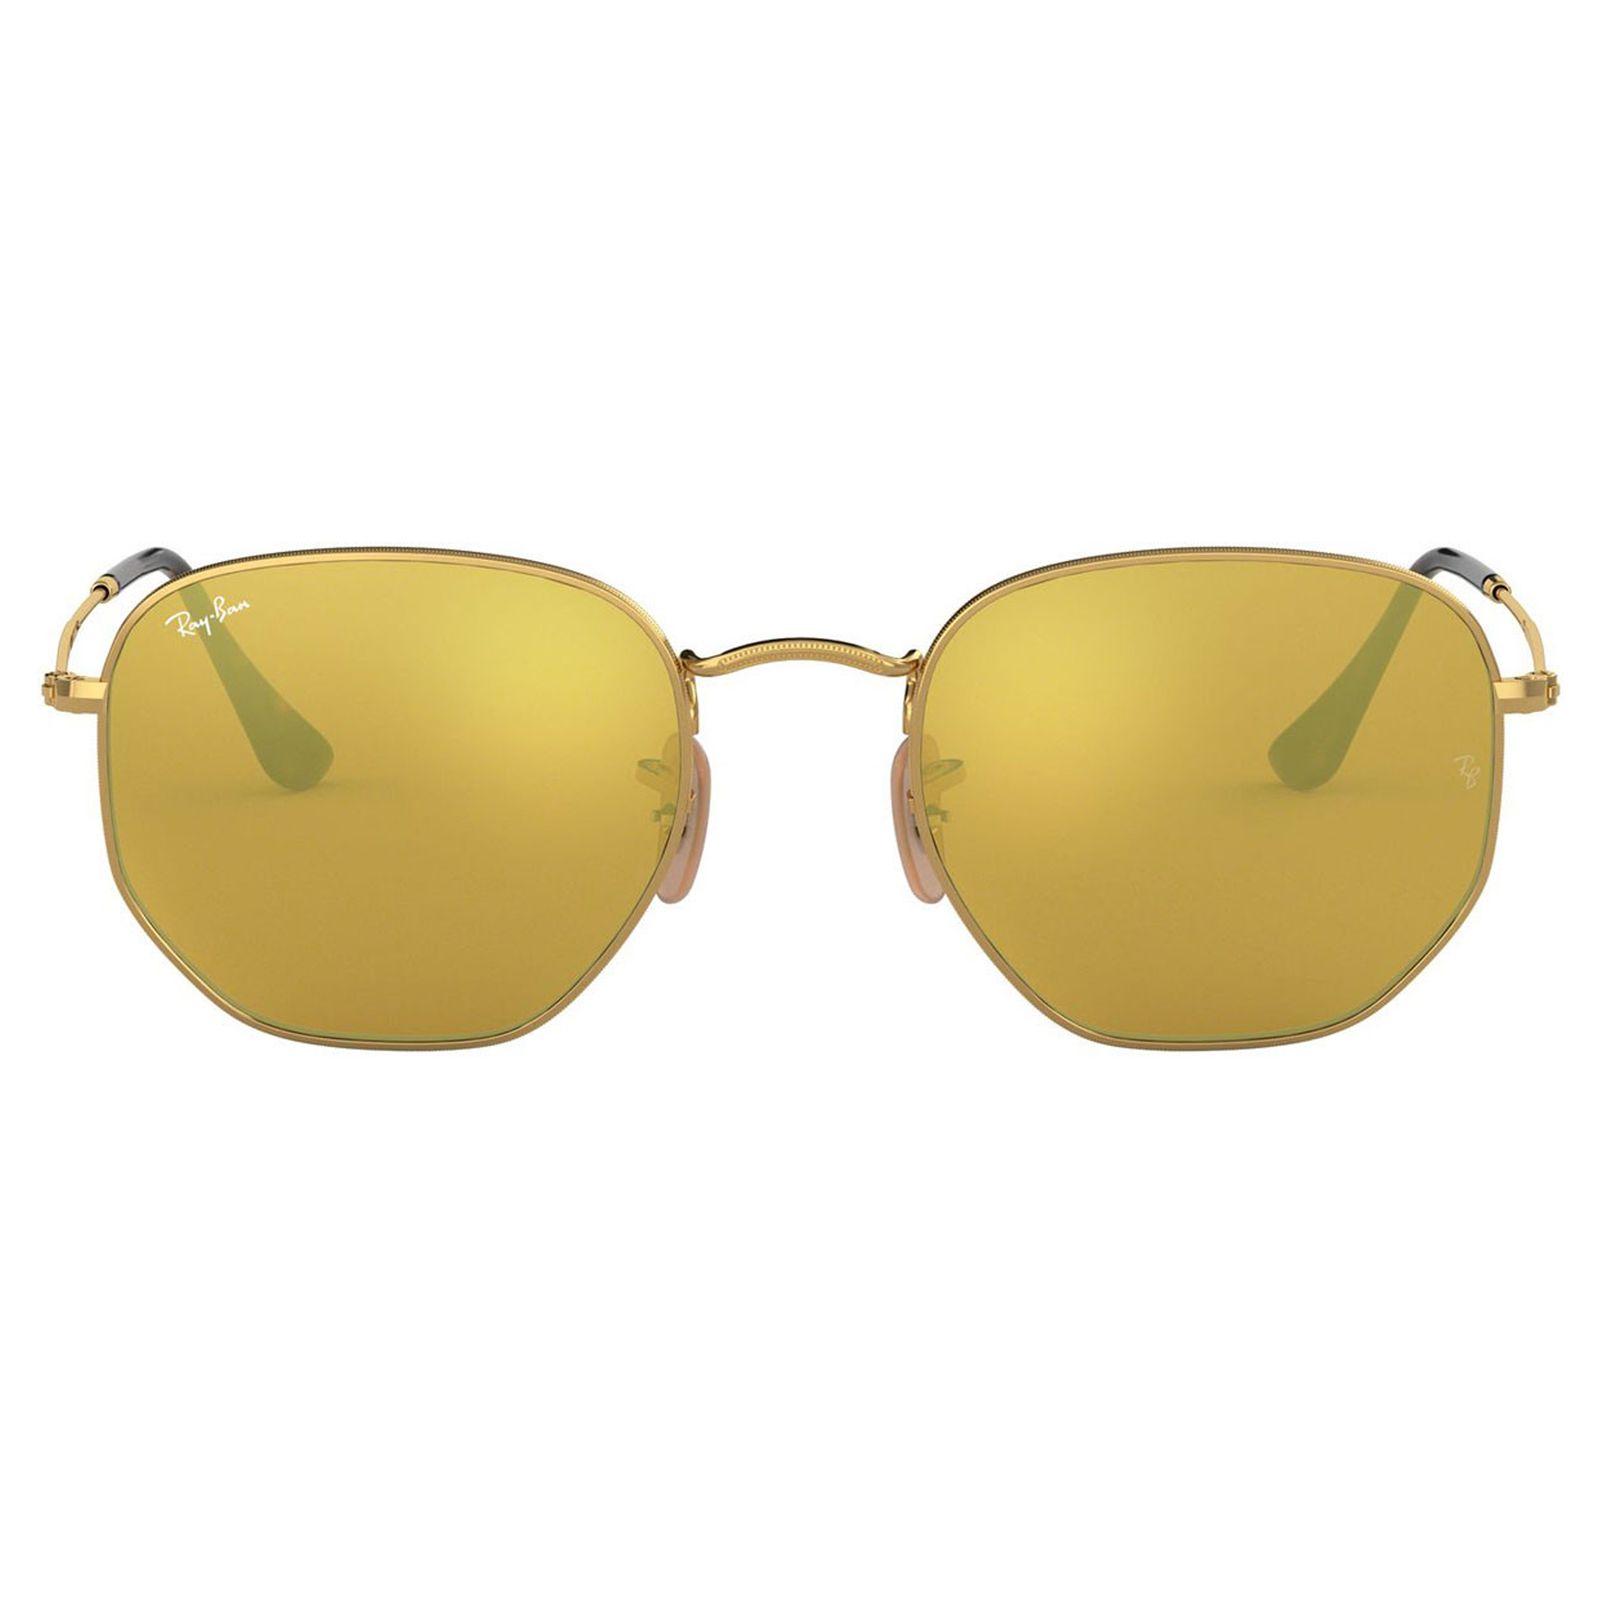 عینک آفتابی ری بن مدل 3548-001/93-54 - طلایی - 2